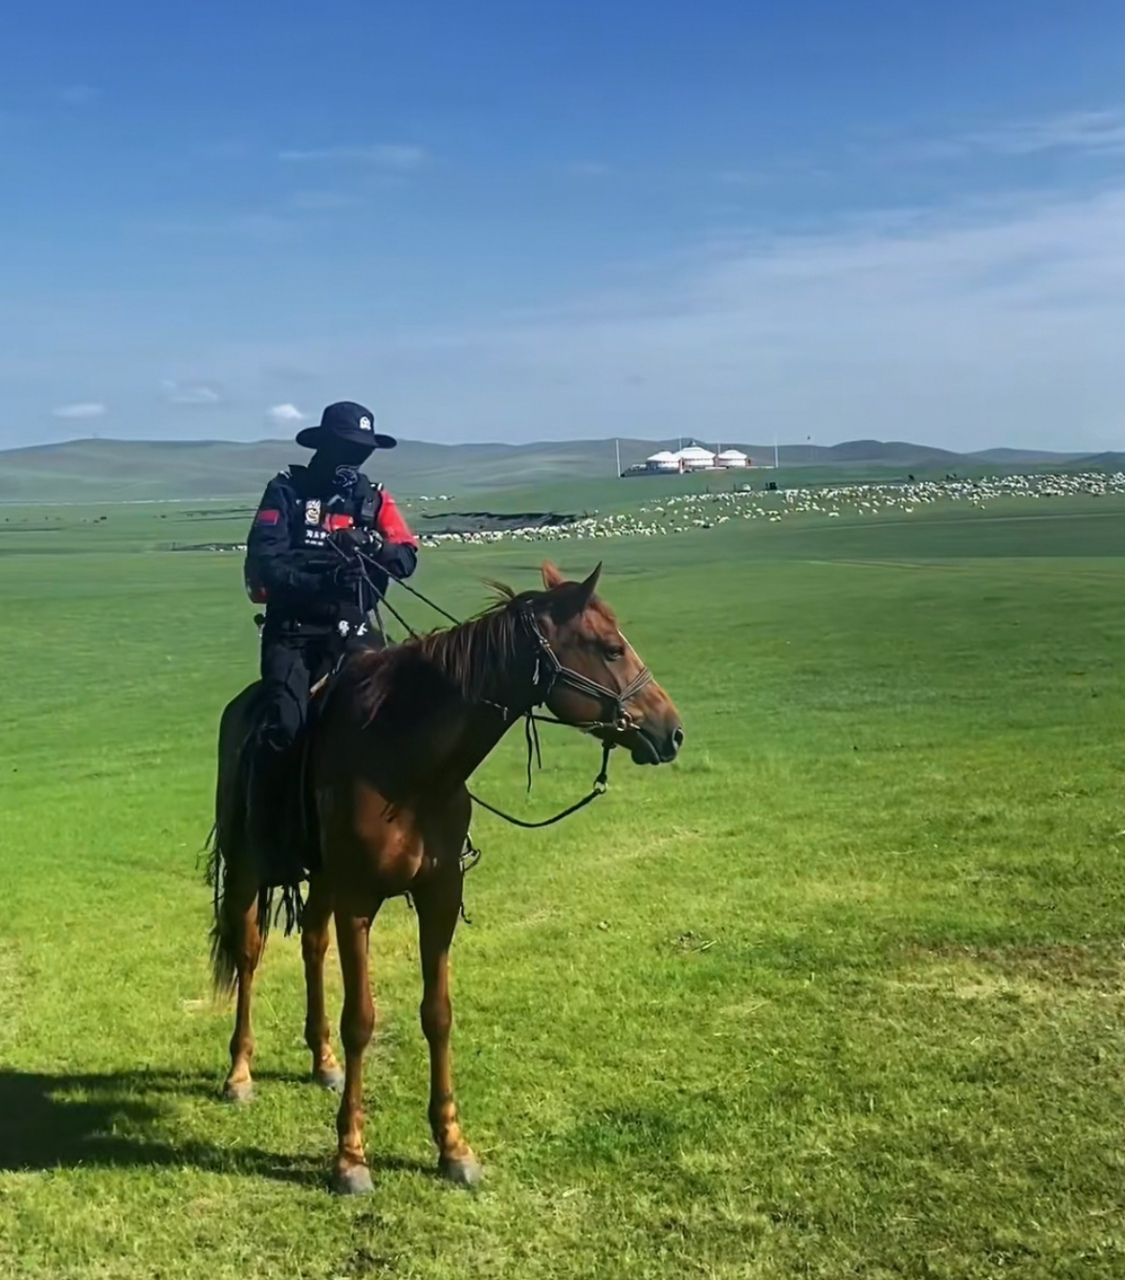 一个网友去内蒙古玩,无意中拍照了内蒙古海东青骑警骑马指挥交通的